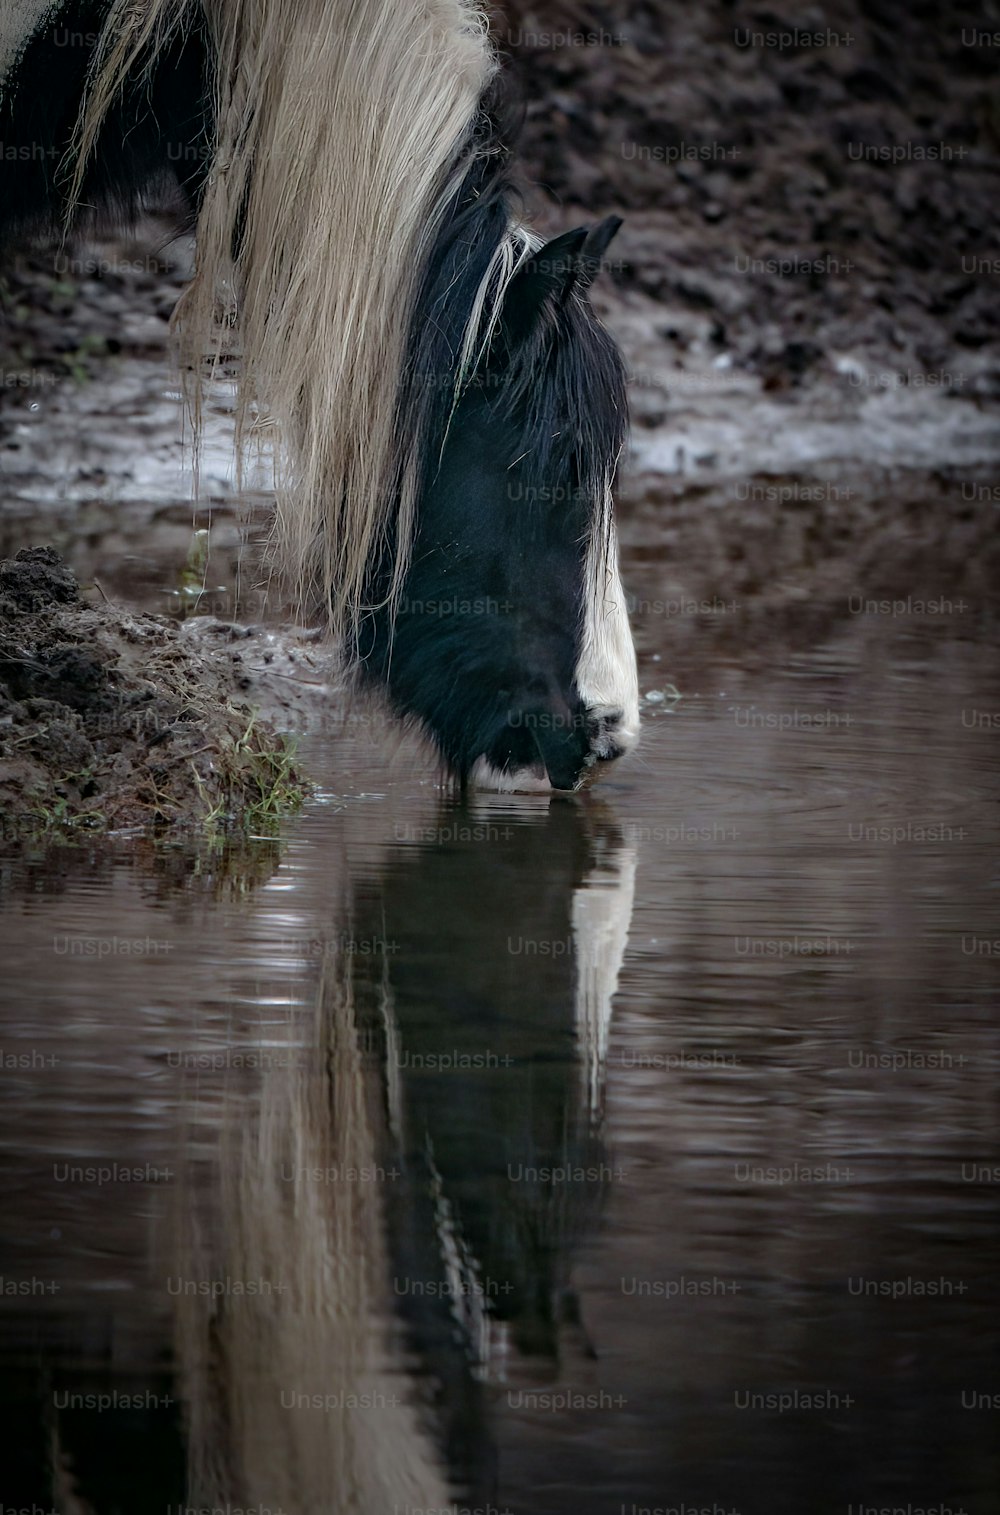 Un caballo blanco y negro bebiendo agua de un estanque